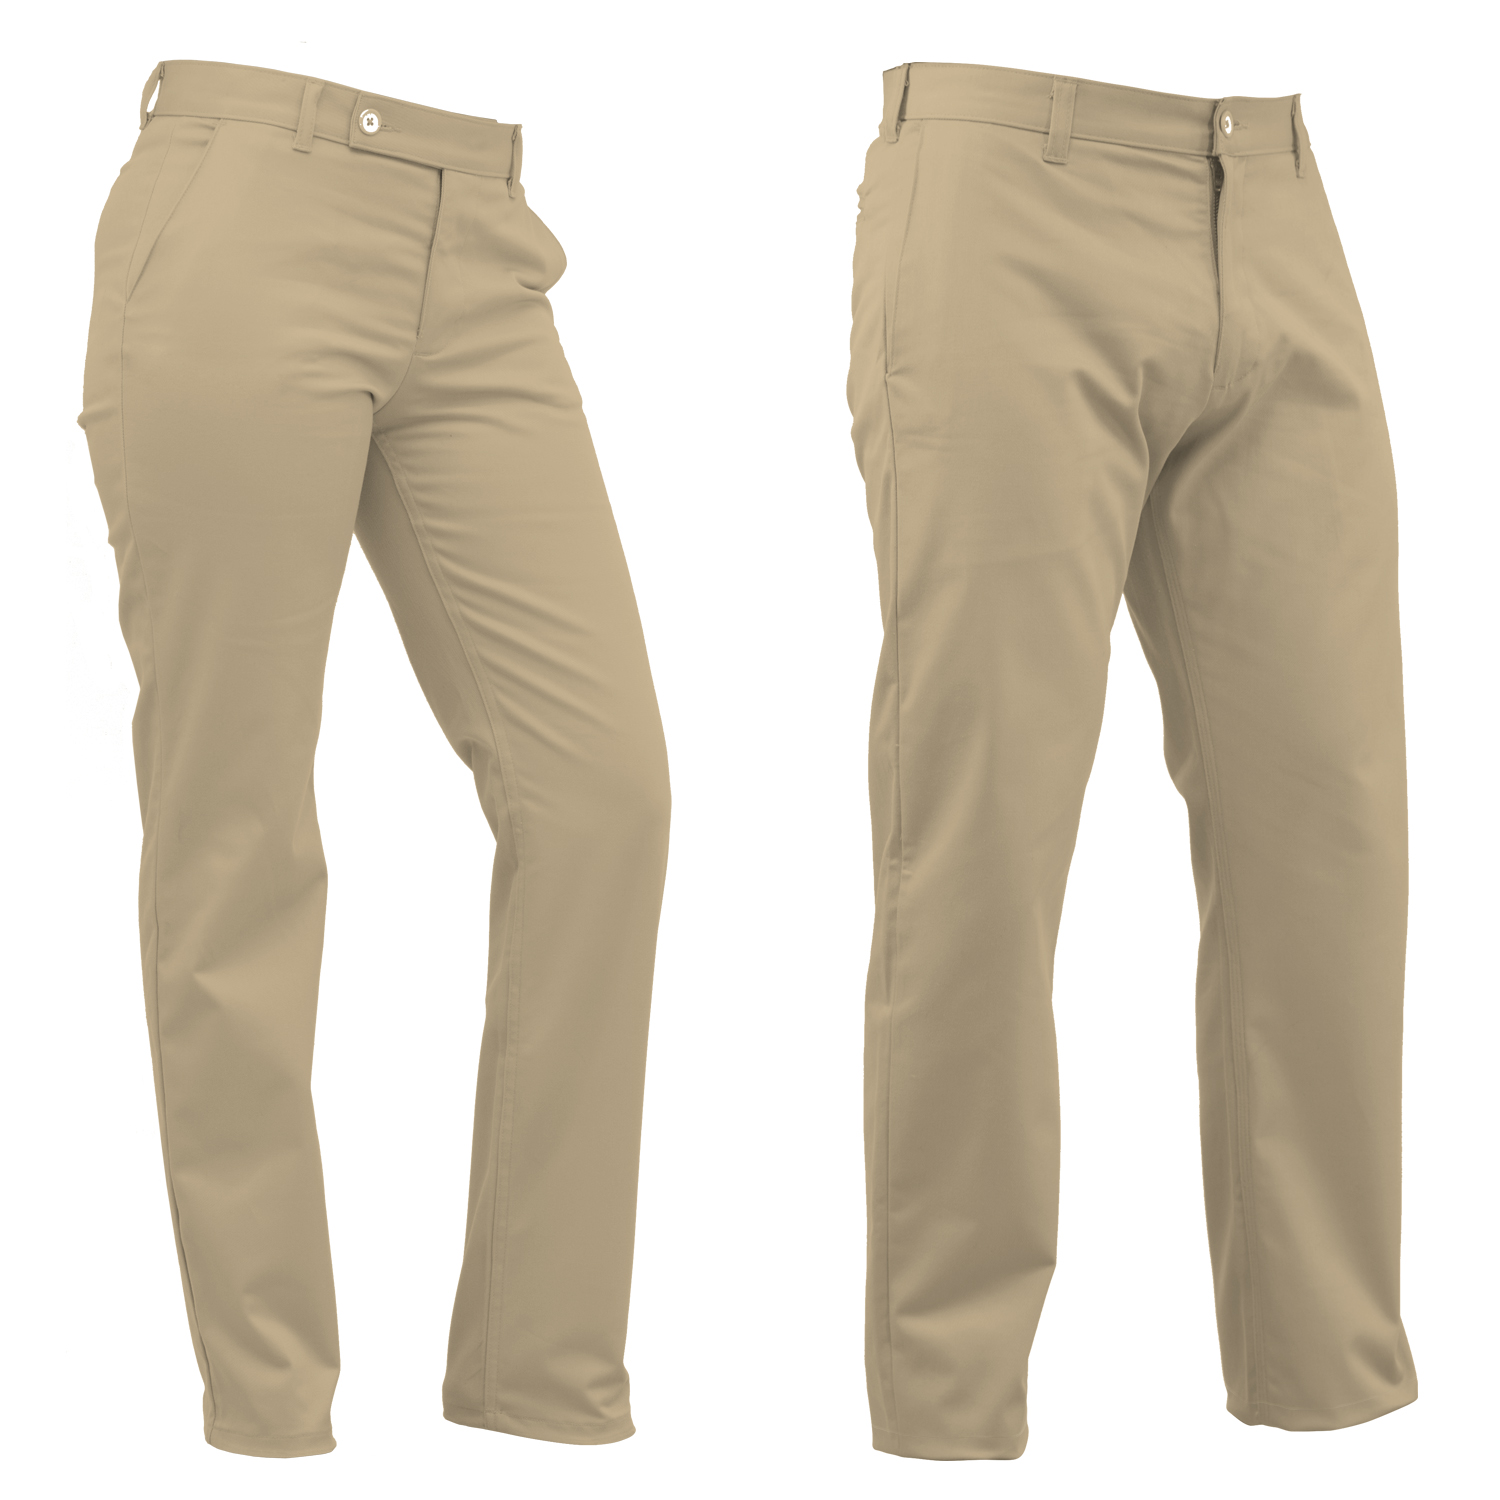 PANTALON SEMIRECTO, Los pantalones BIBO tienen un corte semirecto que da confort y astiliza la figura sin perder la formalidad.